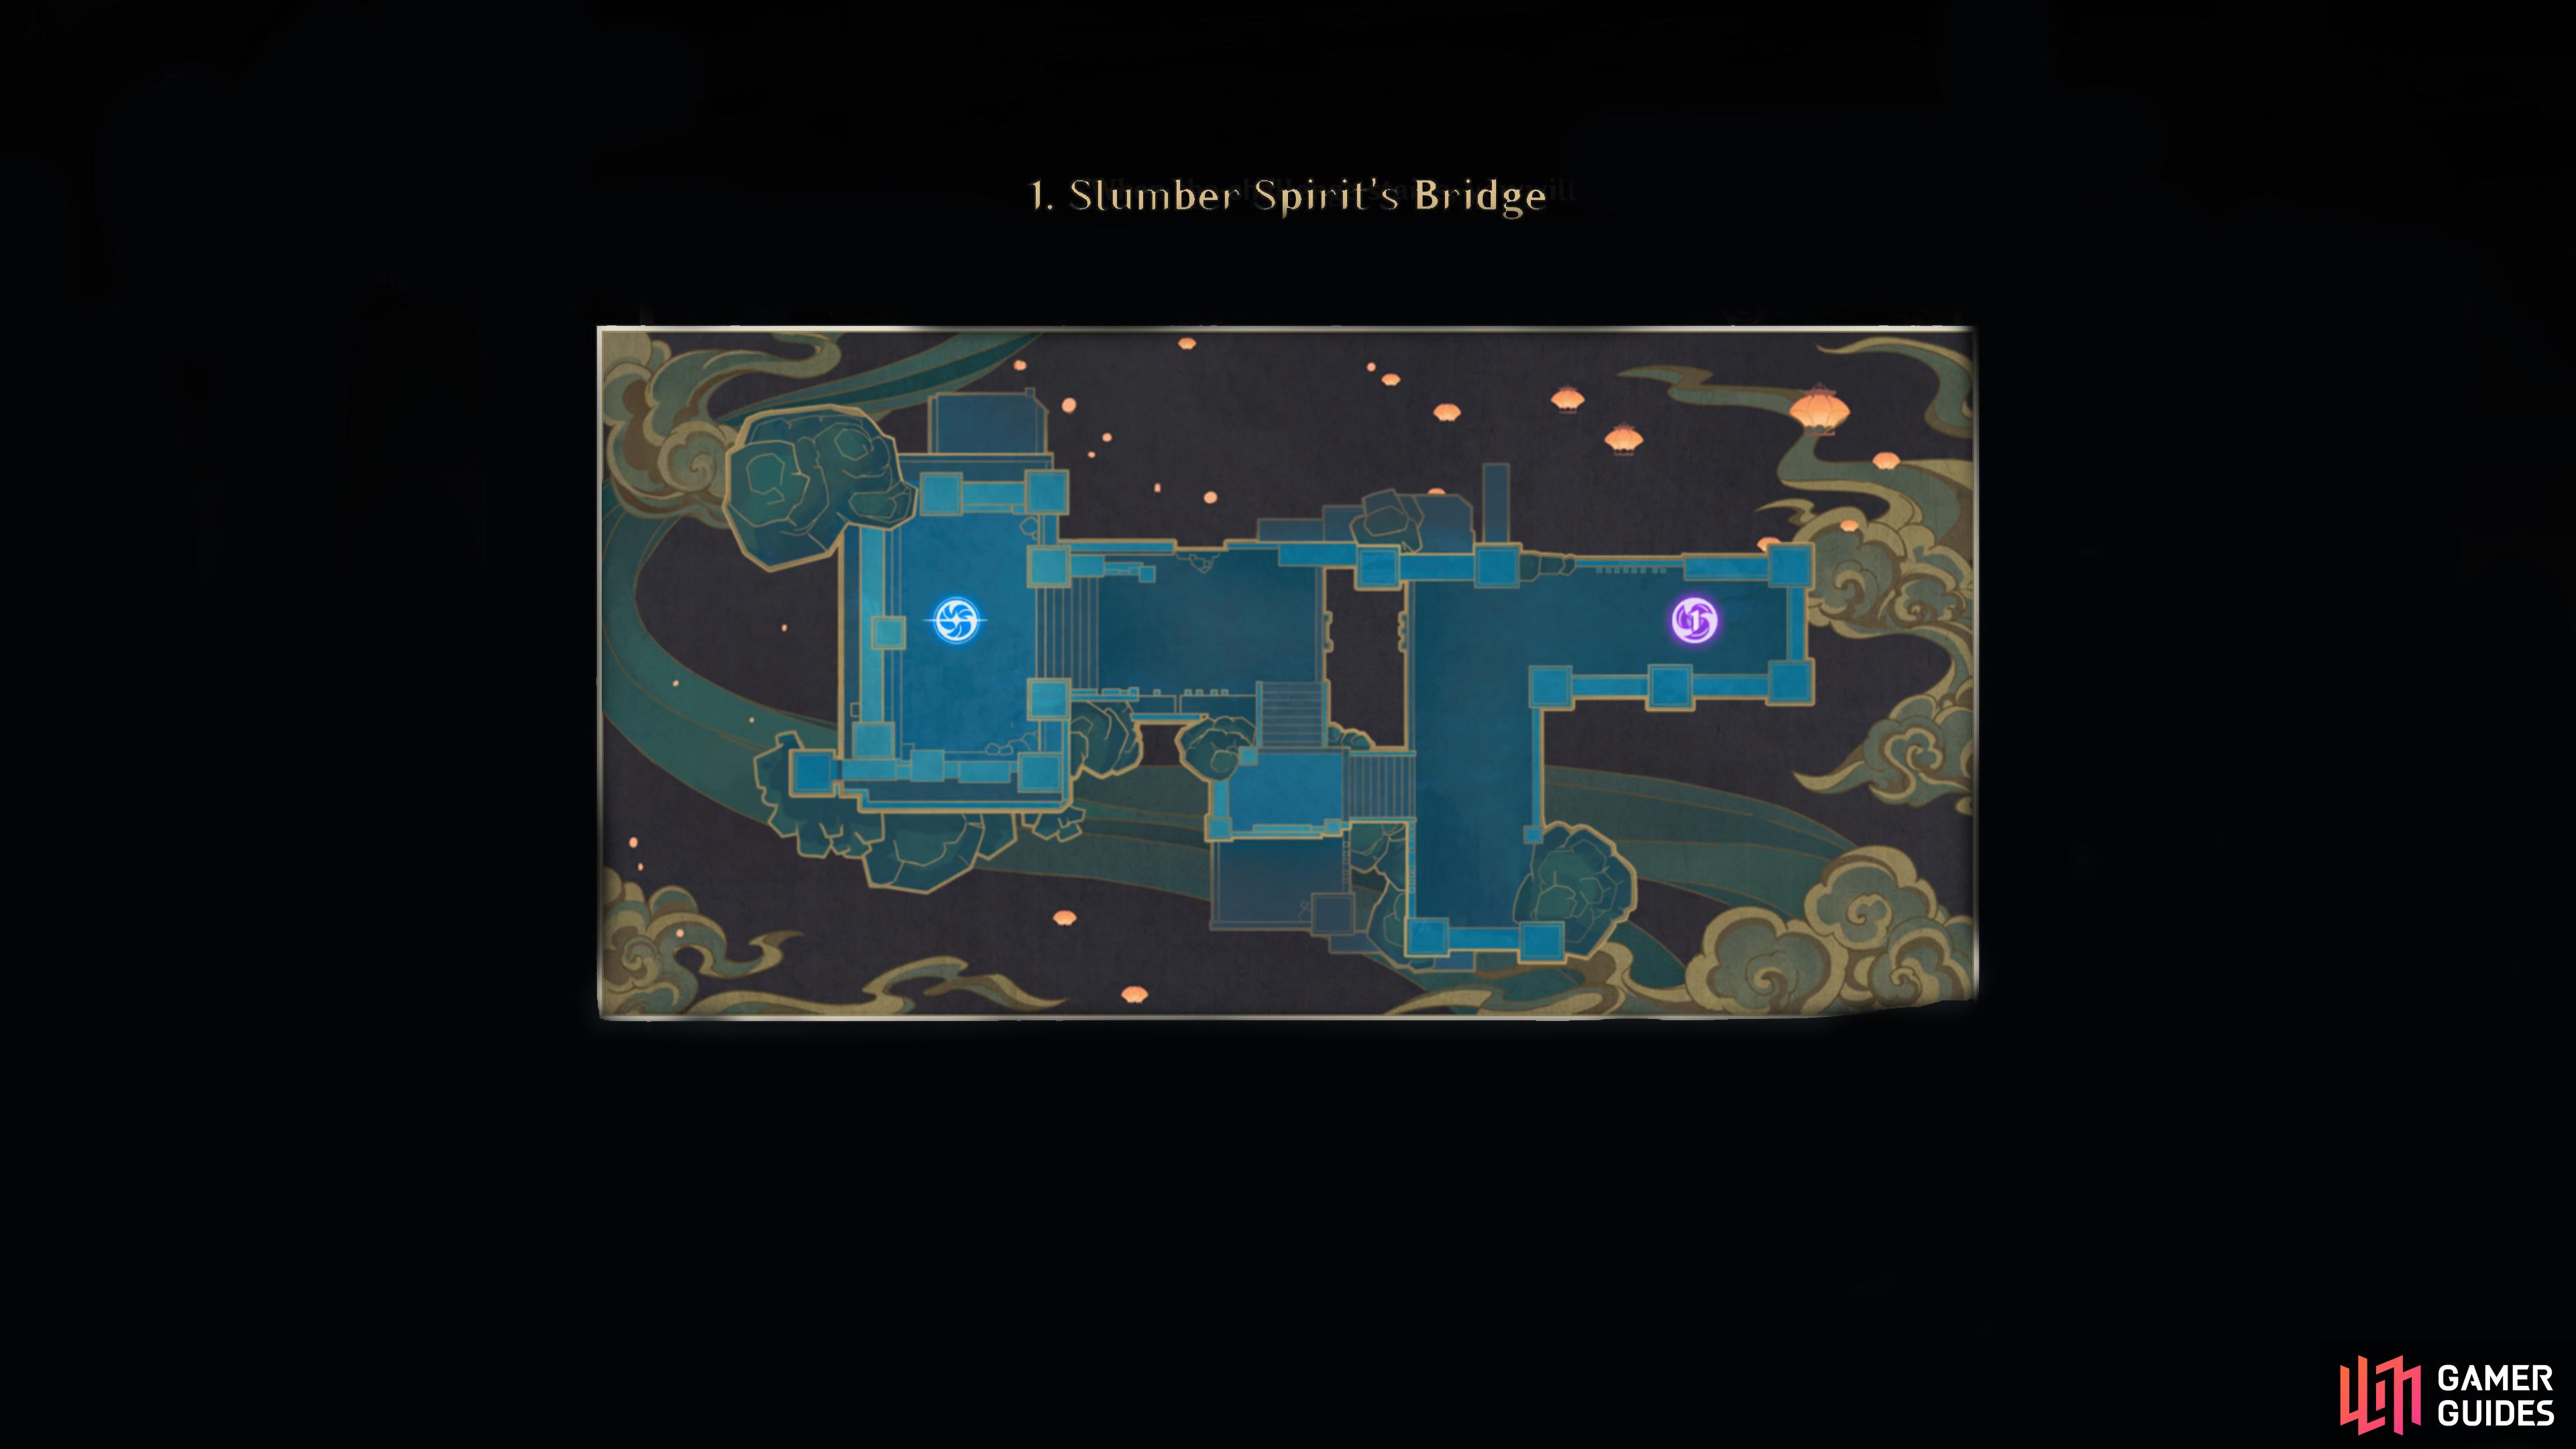 An image of the Slumber Spirit's Bridge map.